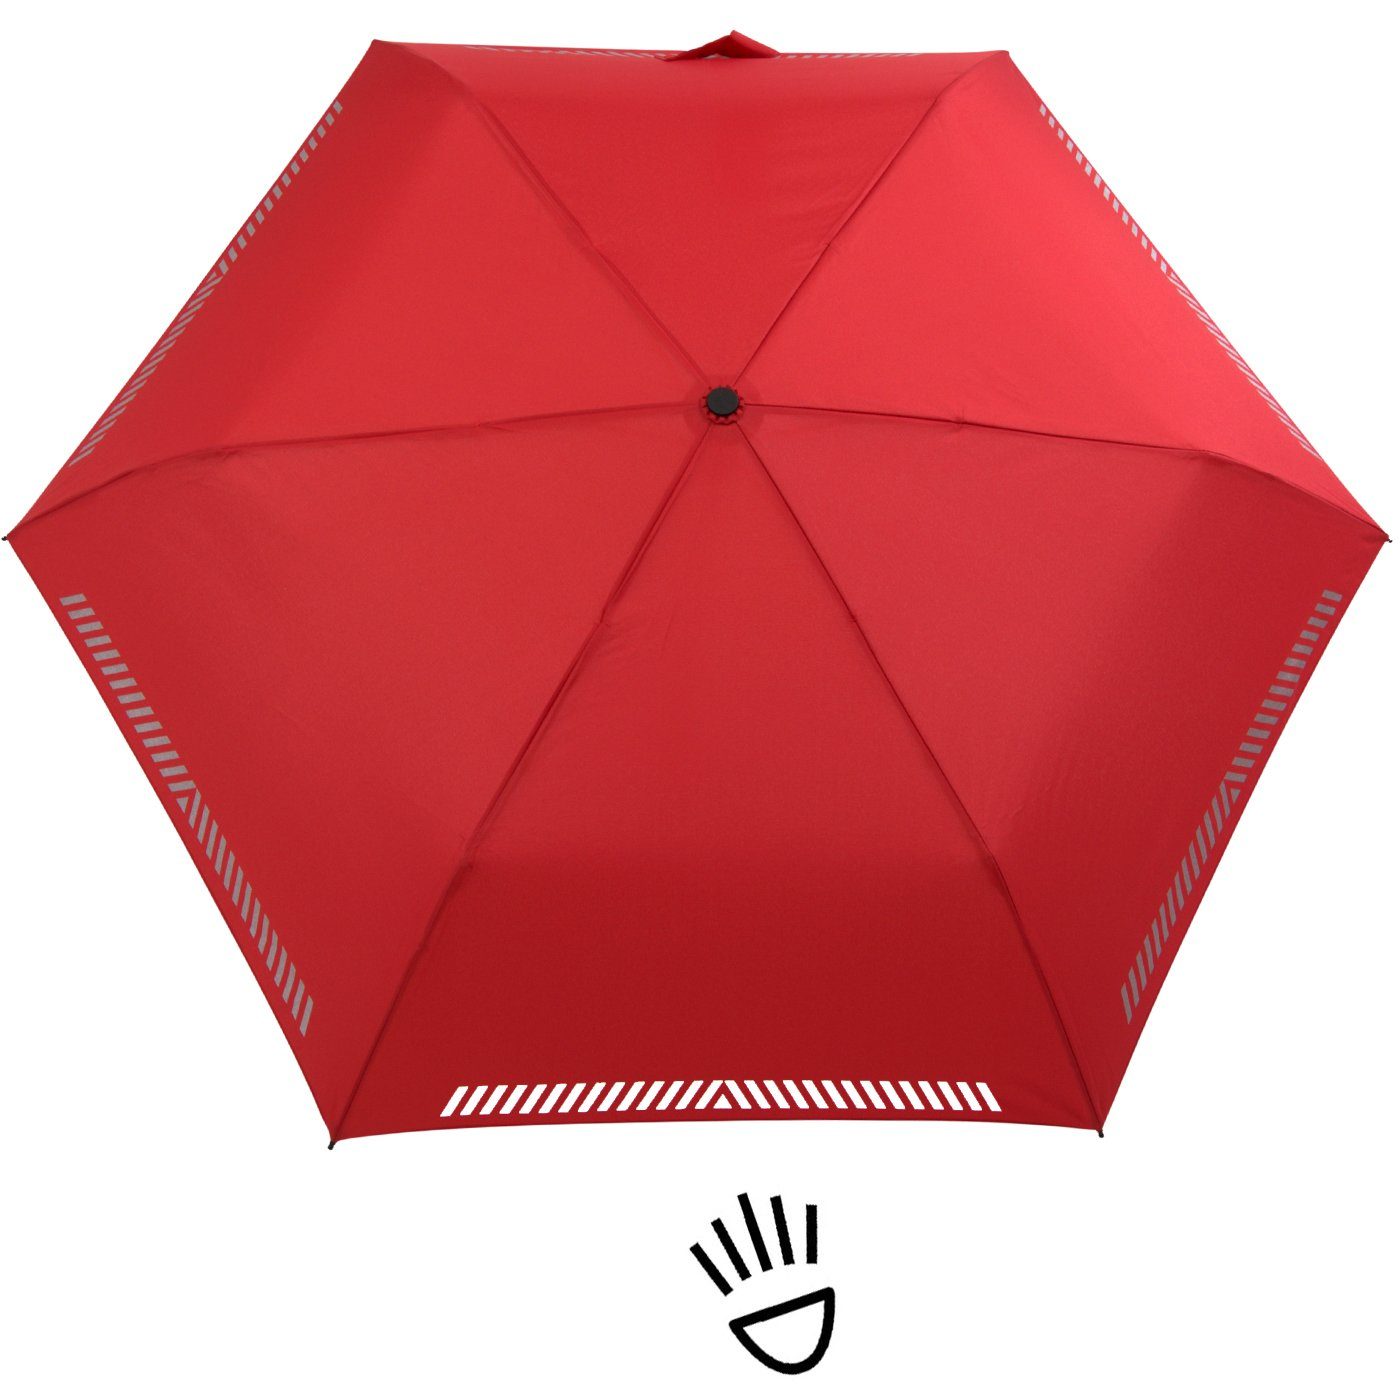 iX-brella Taschenregenschirm Kinderschirm mit Auf-Zu-Automatik, Reflex-Streifen rot durch reflektierend, Sicherheit 